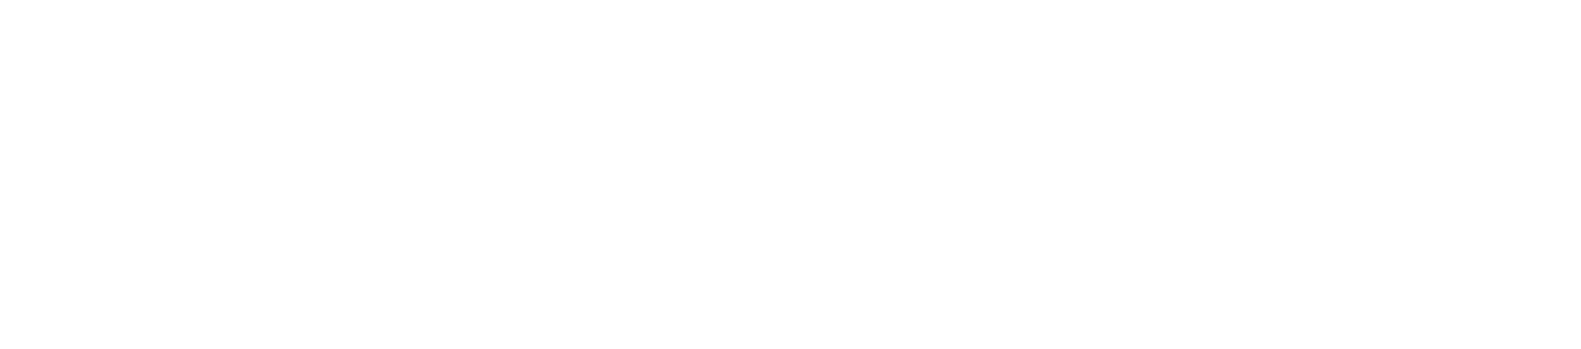 Shin-Etsu Chemical logo grand pour les fonds sombres (PNG transparent)